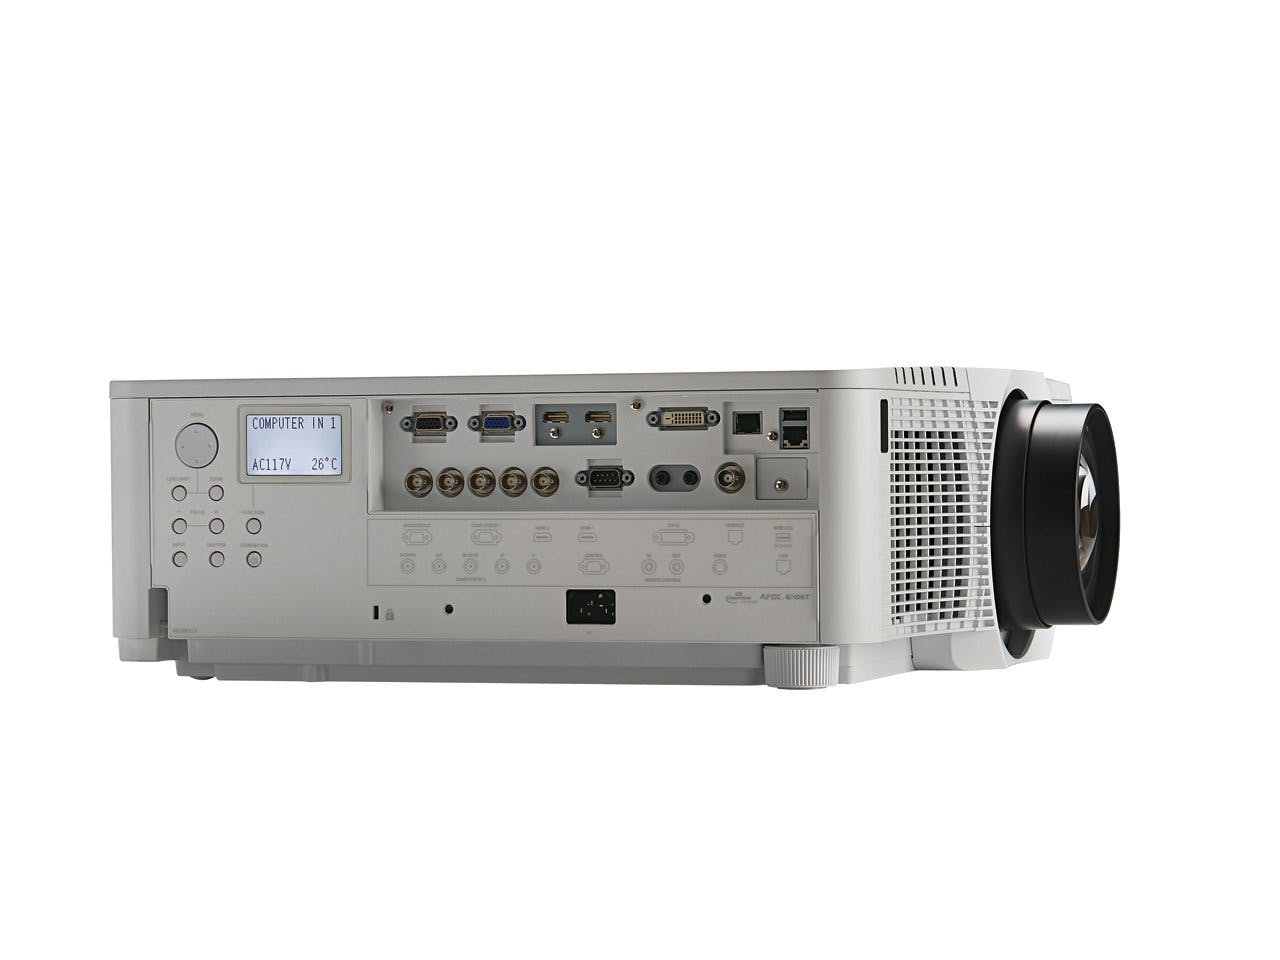 Christie DXG1051-Q 1DLP projector | 121-028101-XX (white) | 121-028112-XX (black)